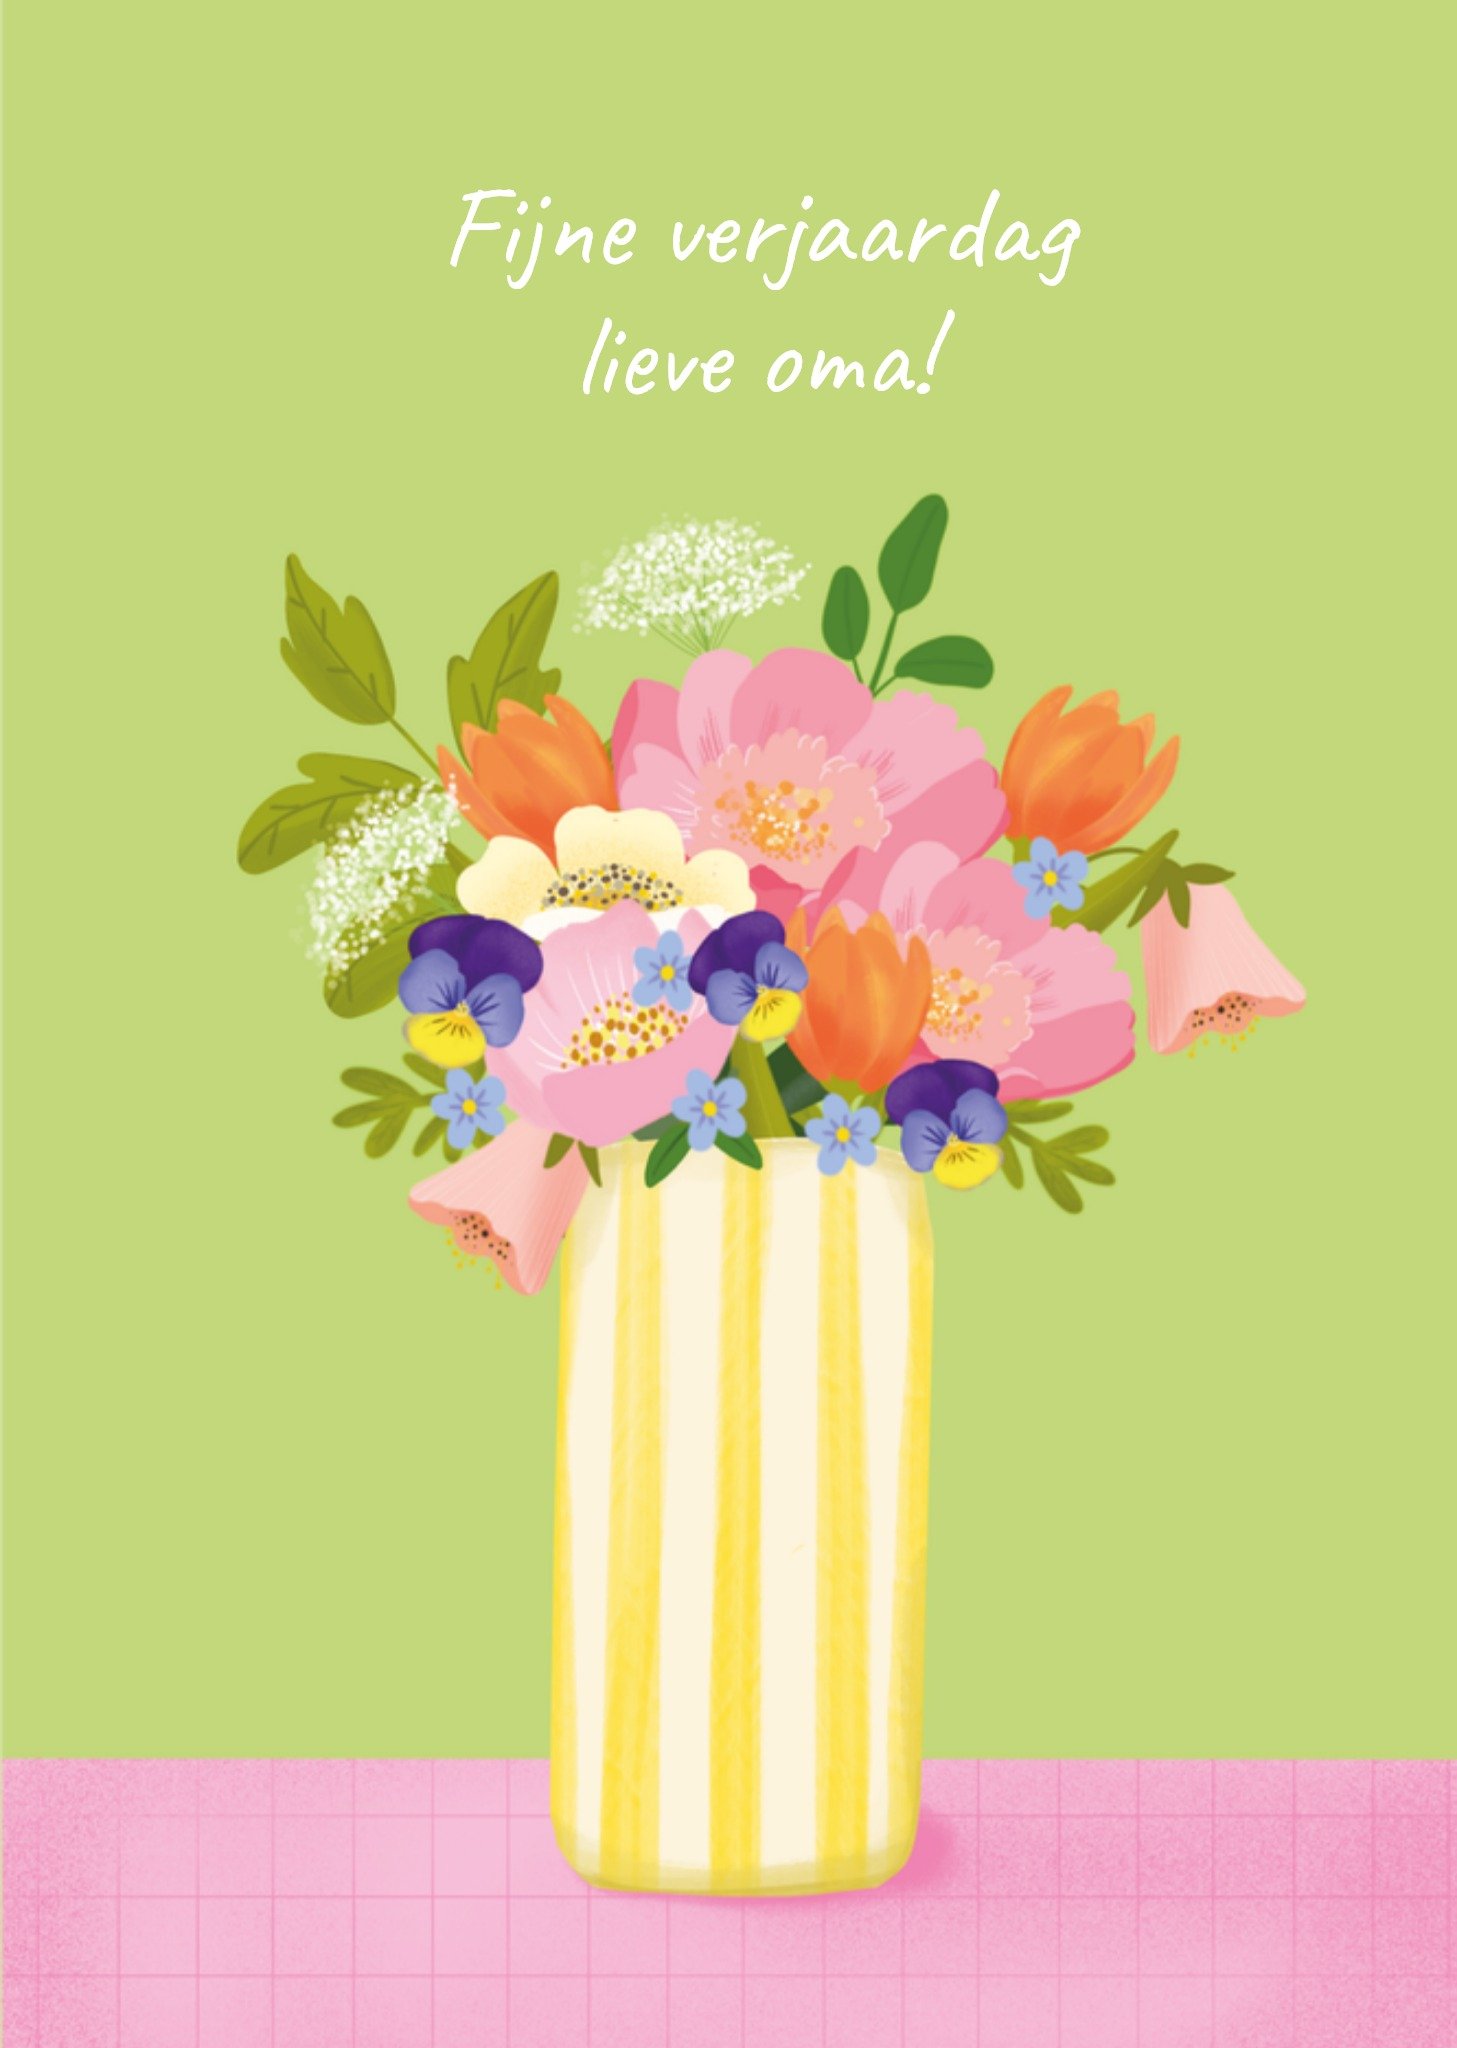 Tsjip - Verjaardagskaart - Oma - Vaas met bloemen